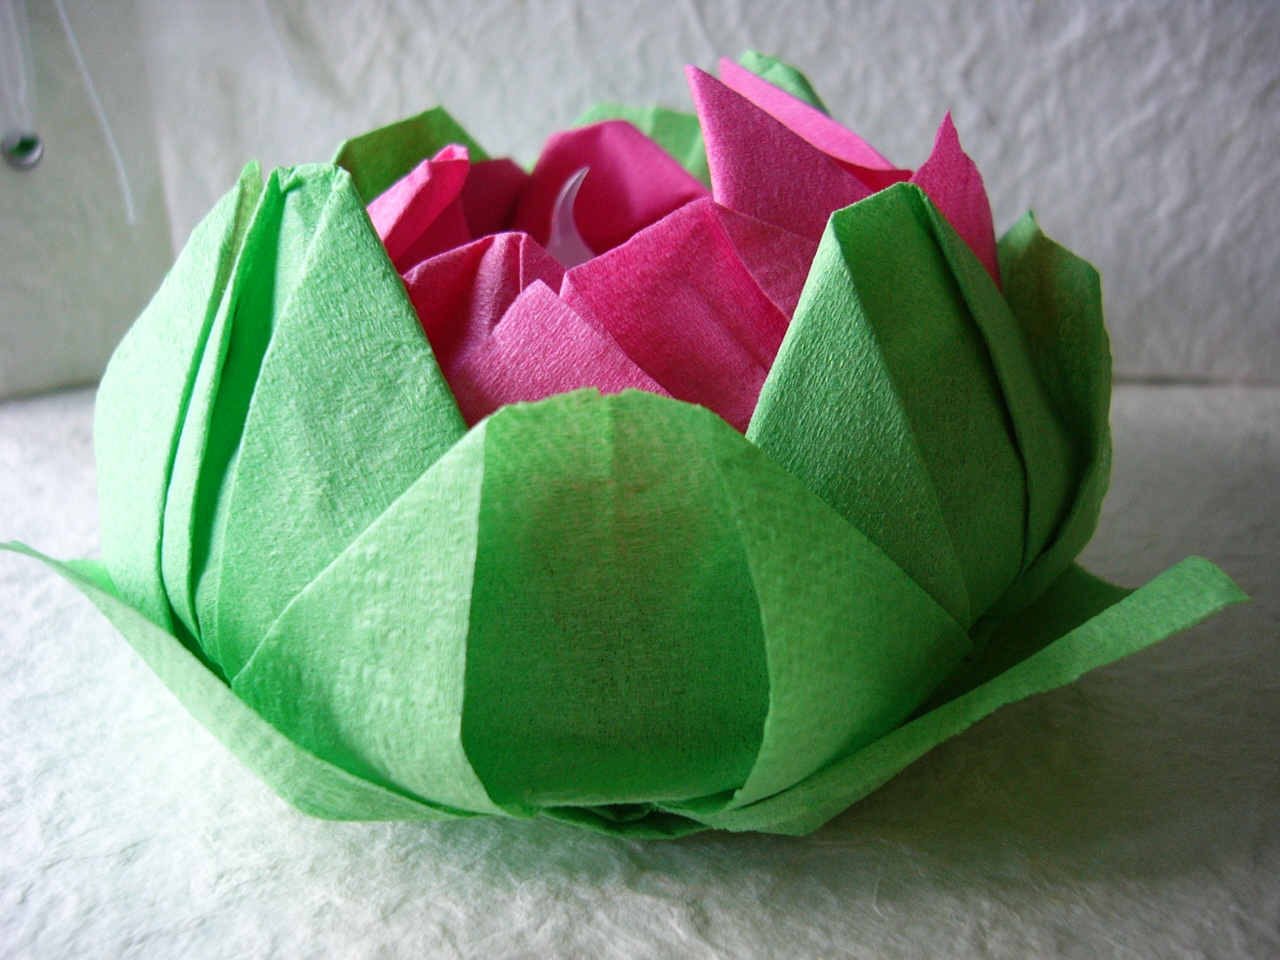 lotus of napkin ideas